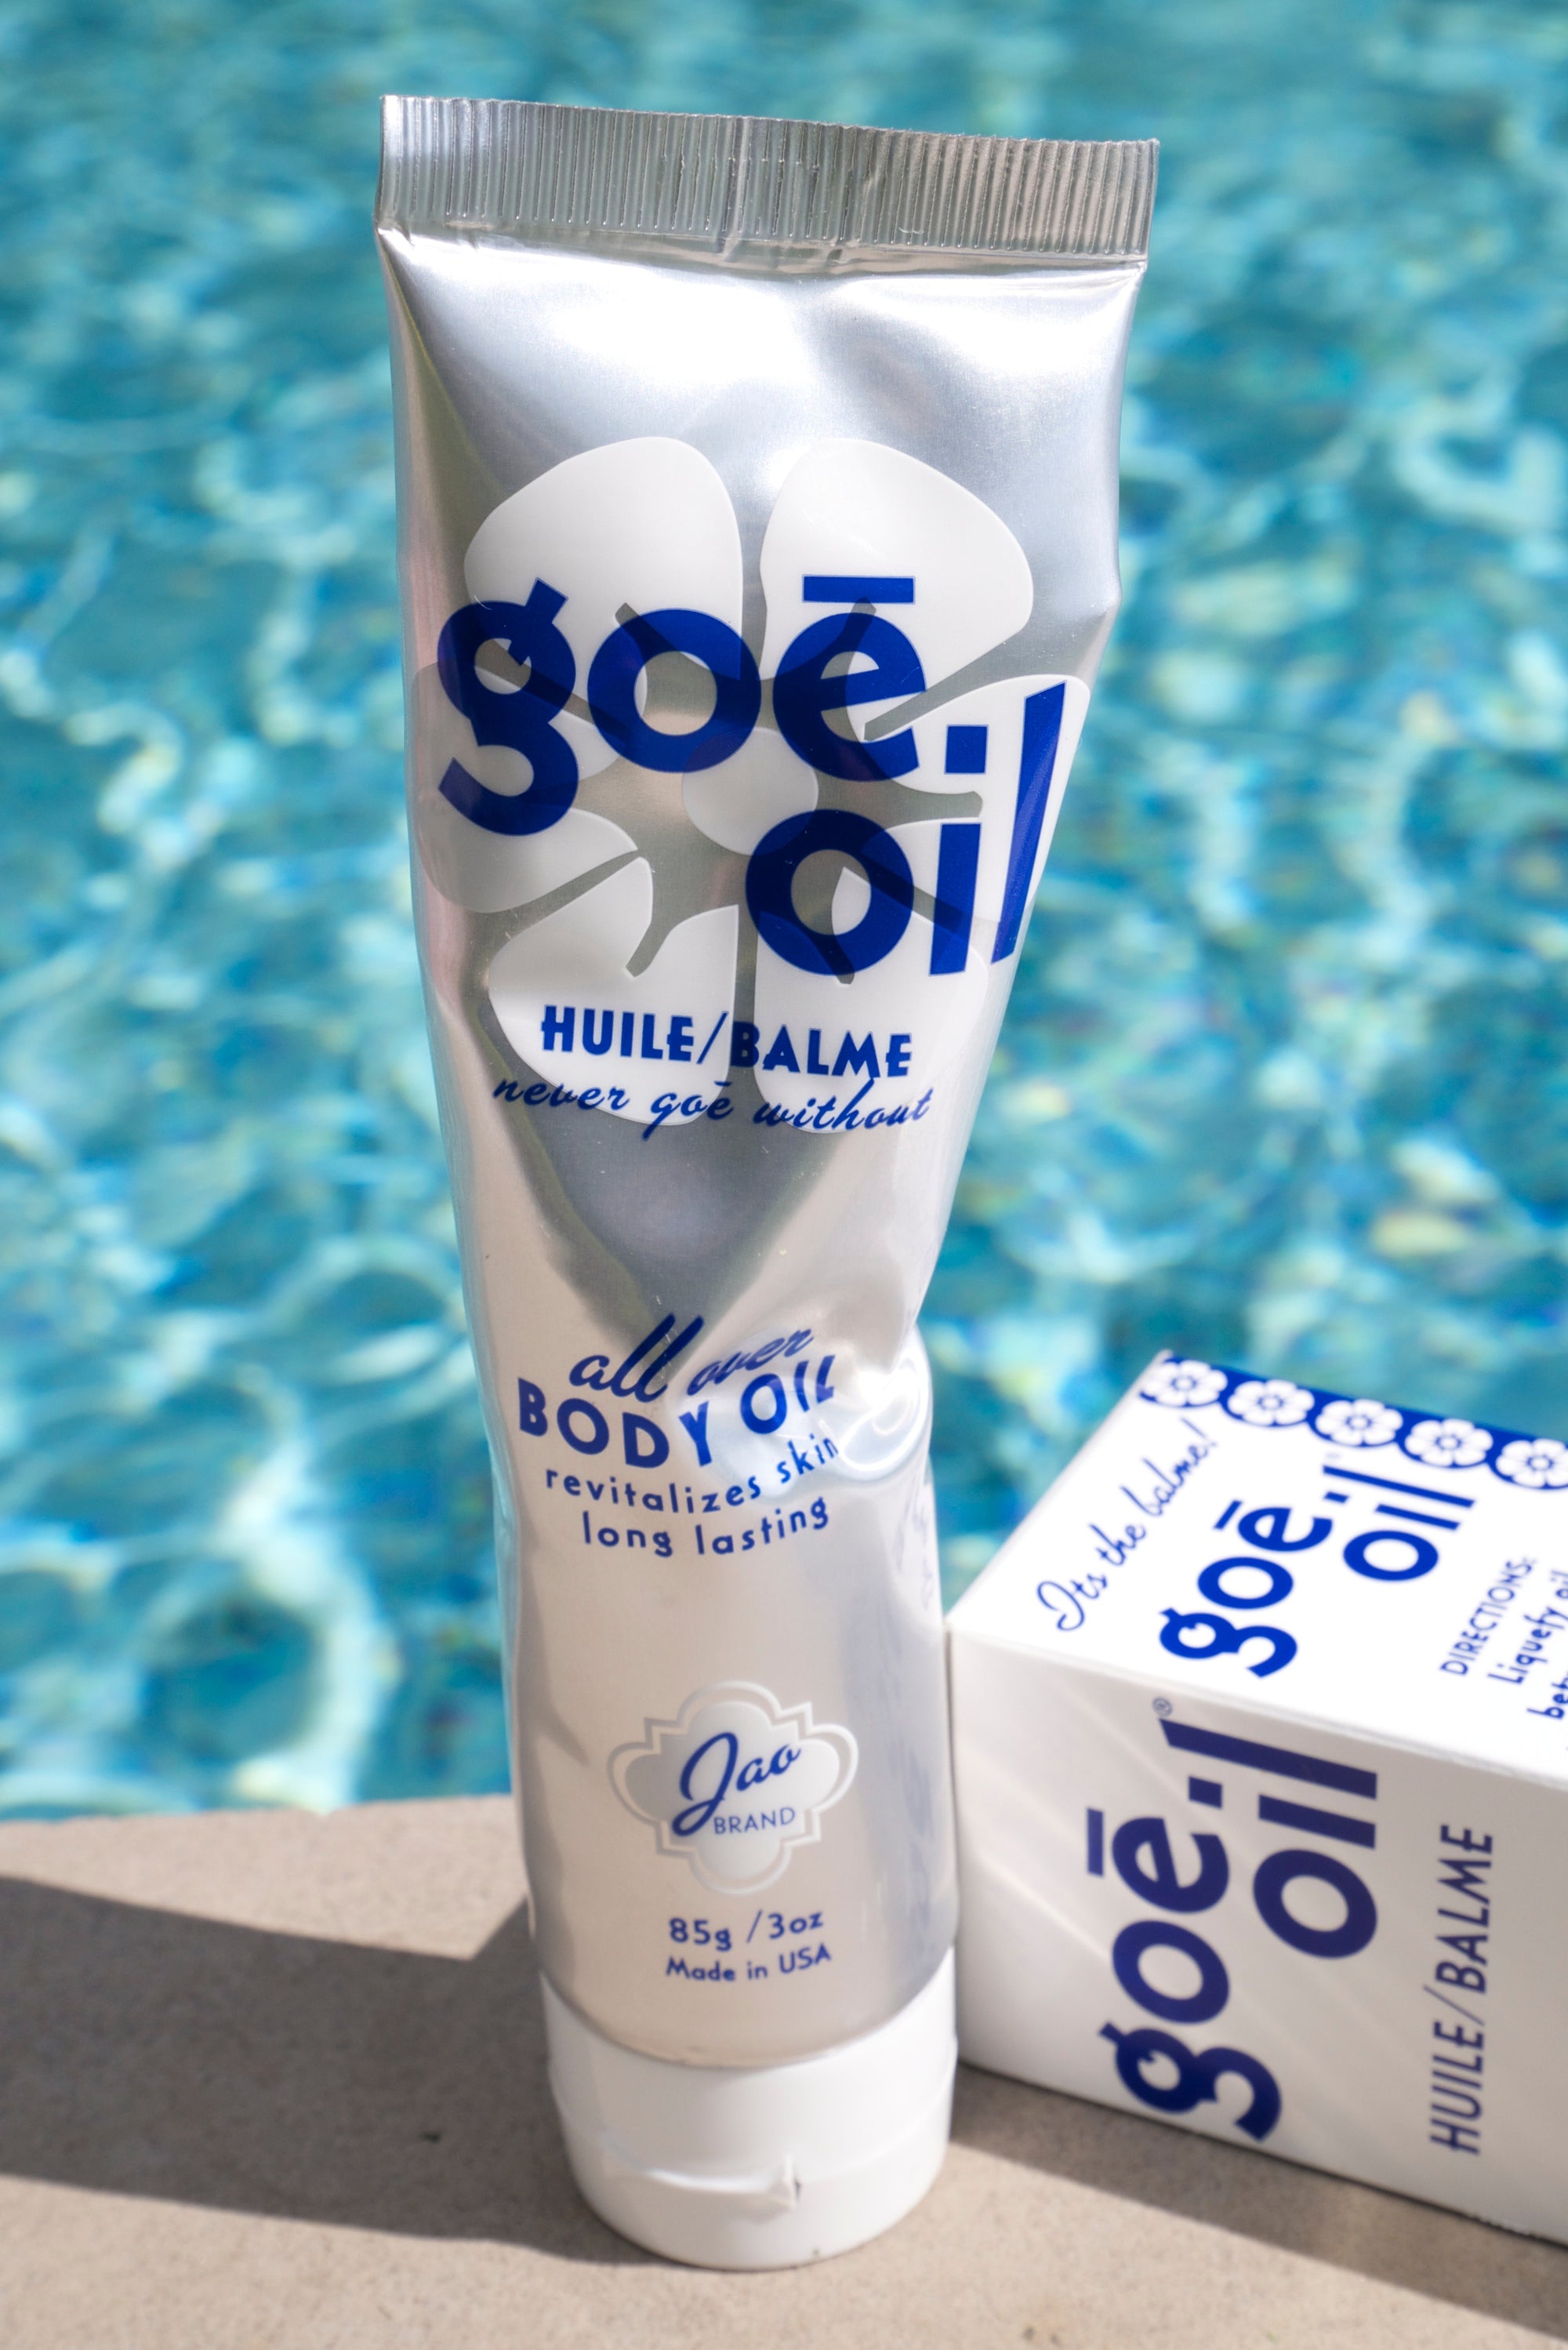 Goē Oil - Semisolid All Over Body Oil